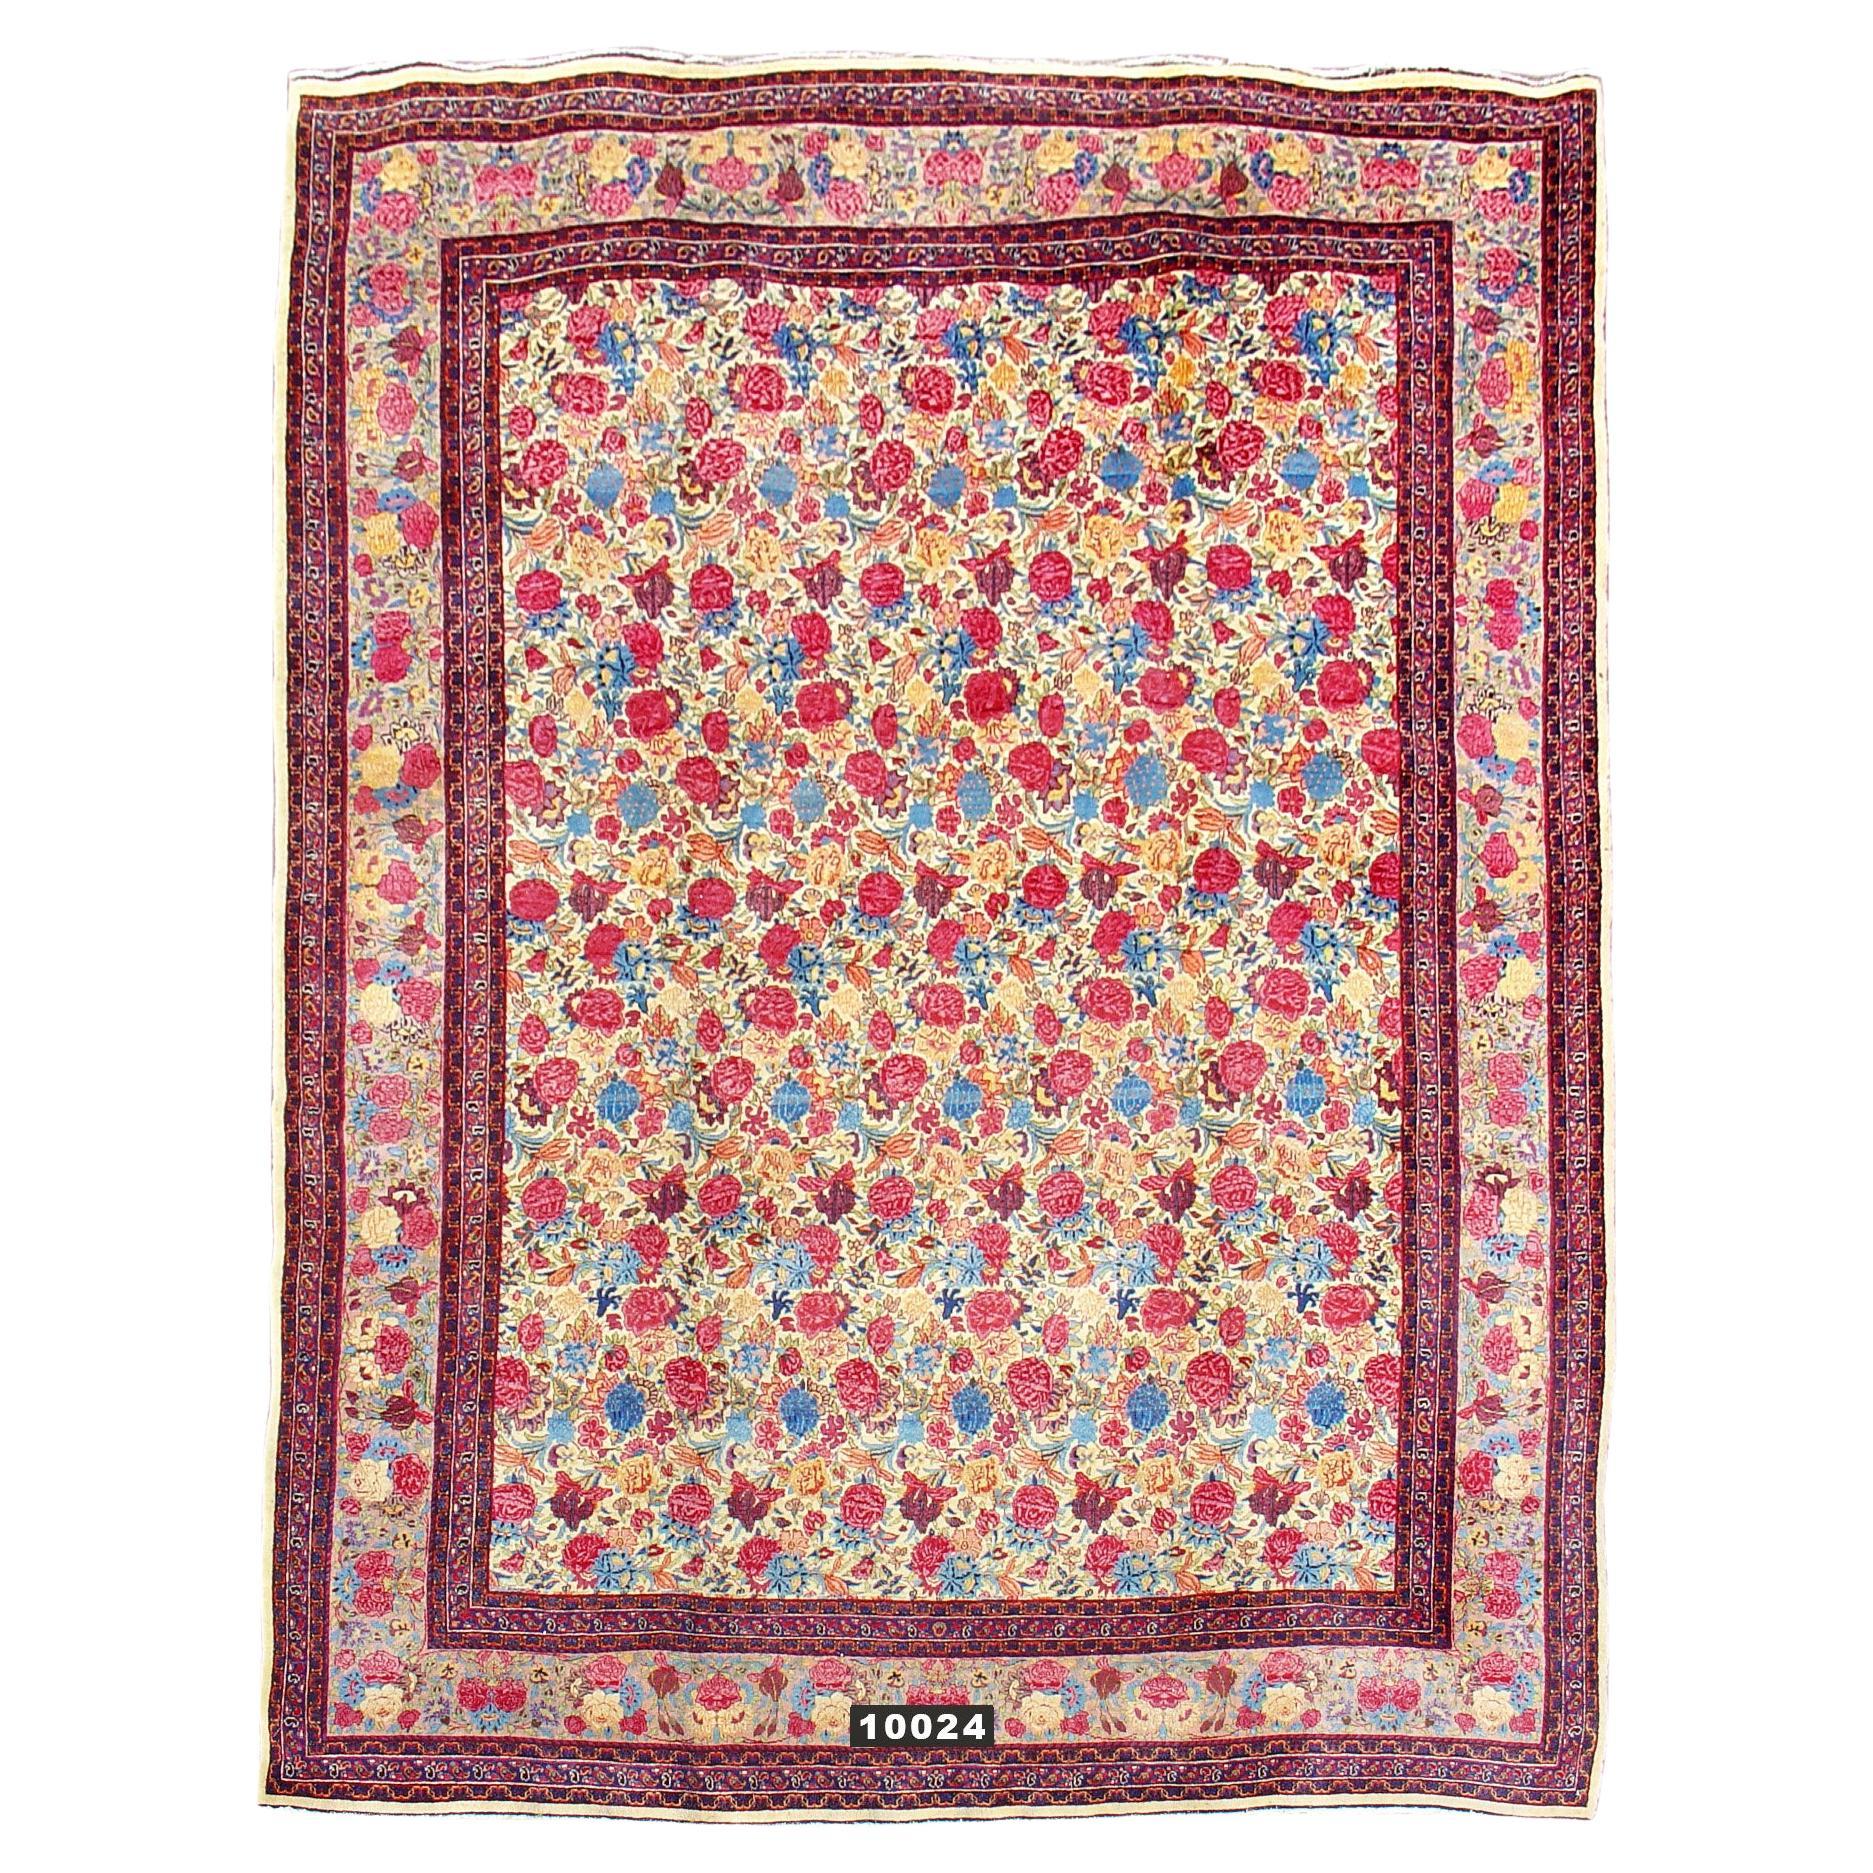 Antique Persian Mashad Carpet, 19th Century